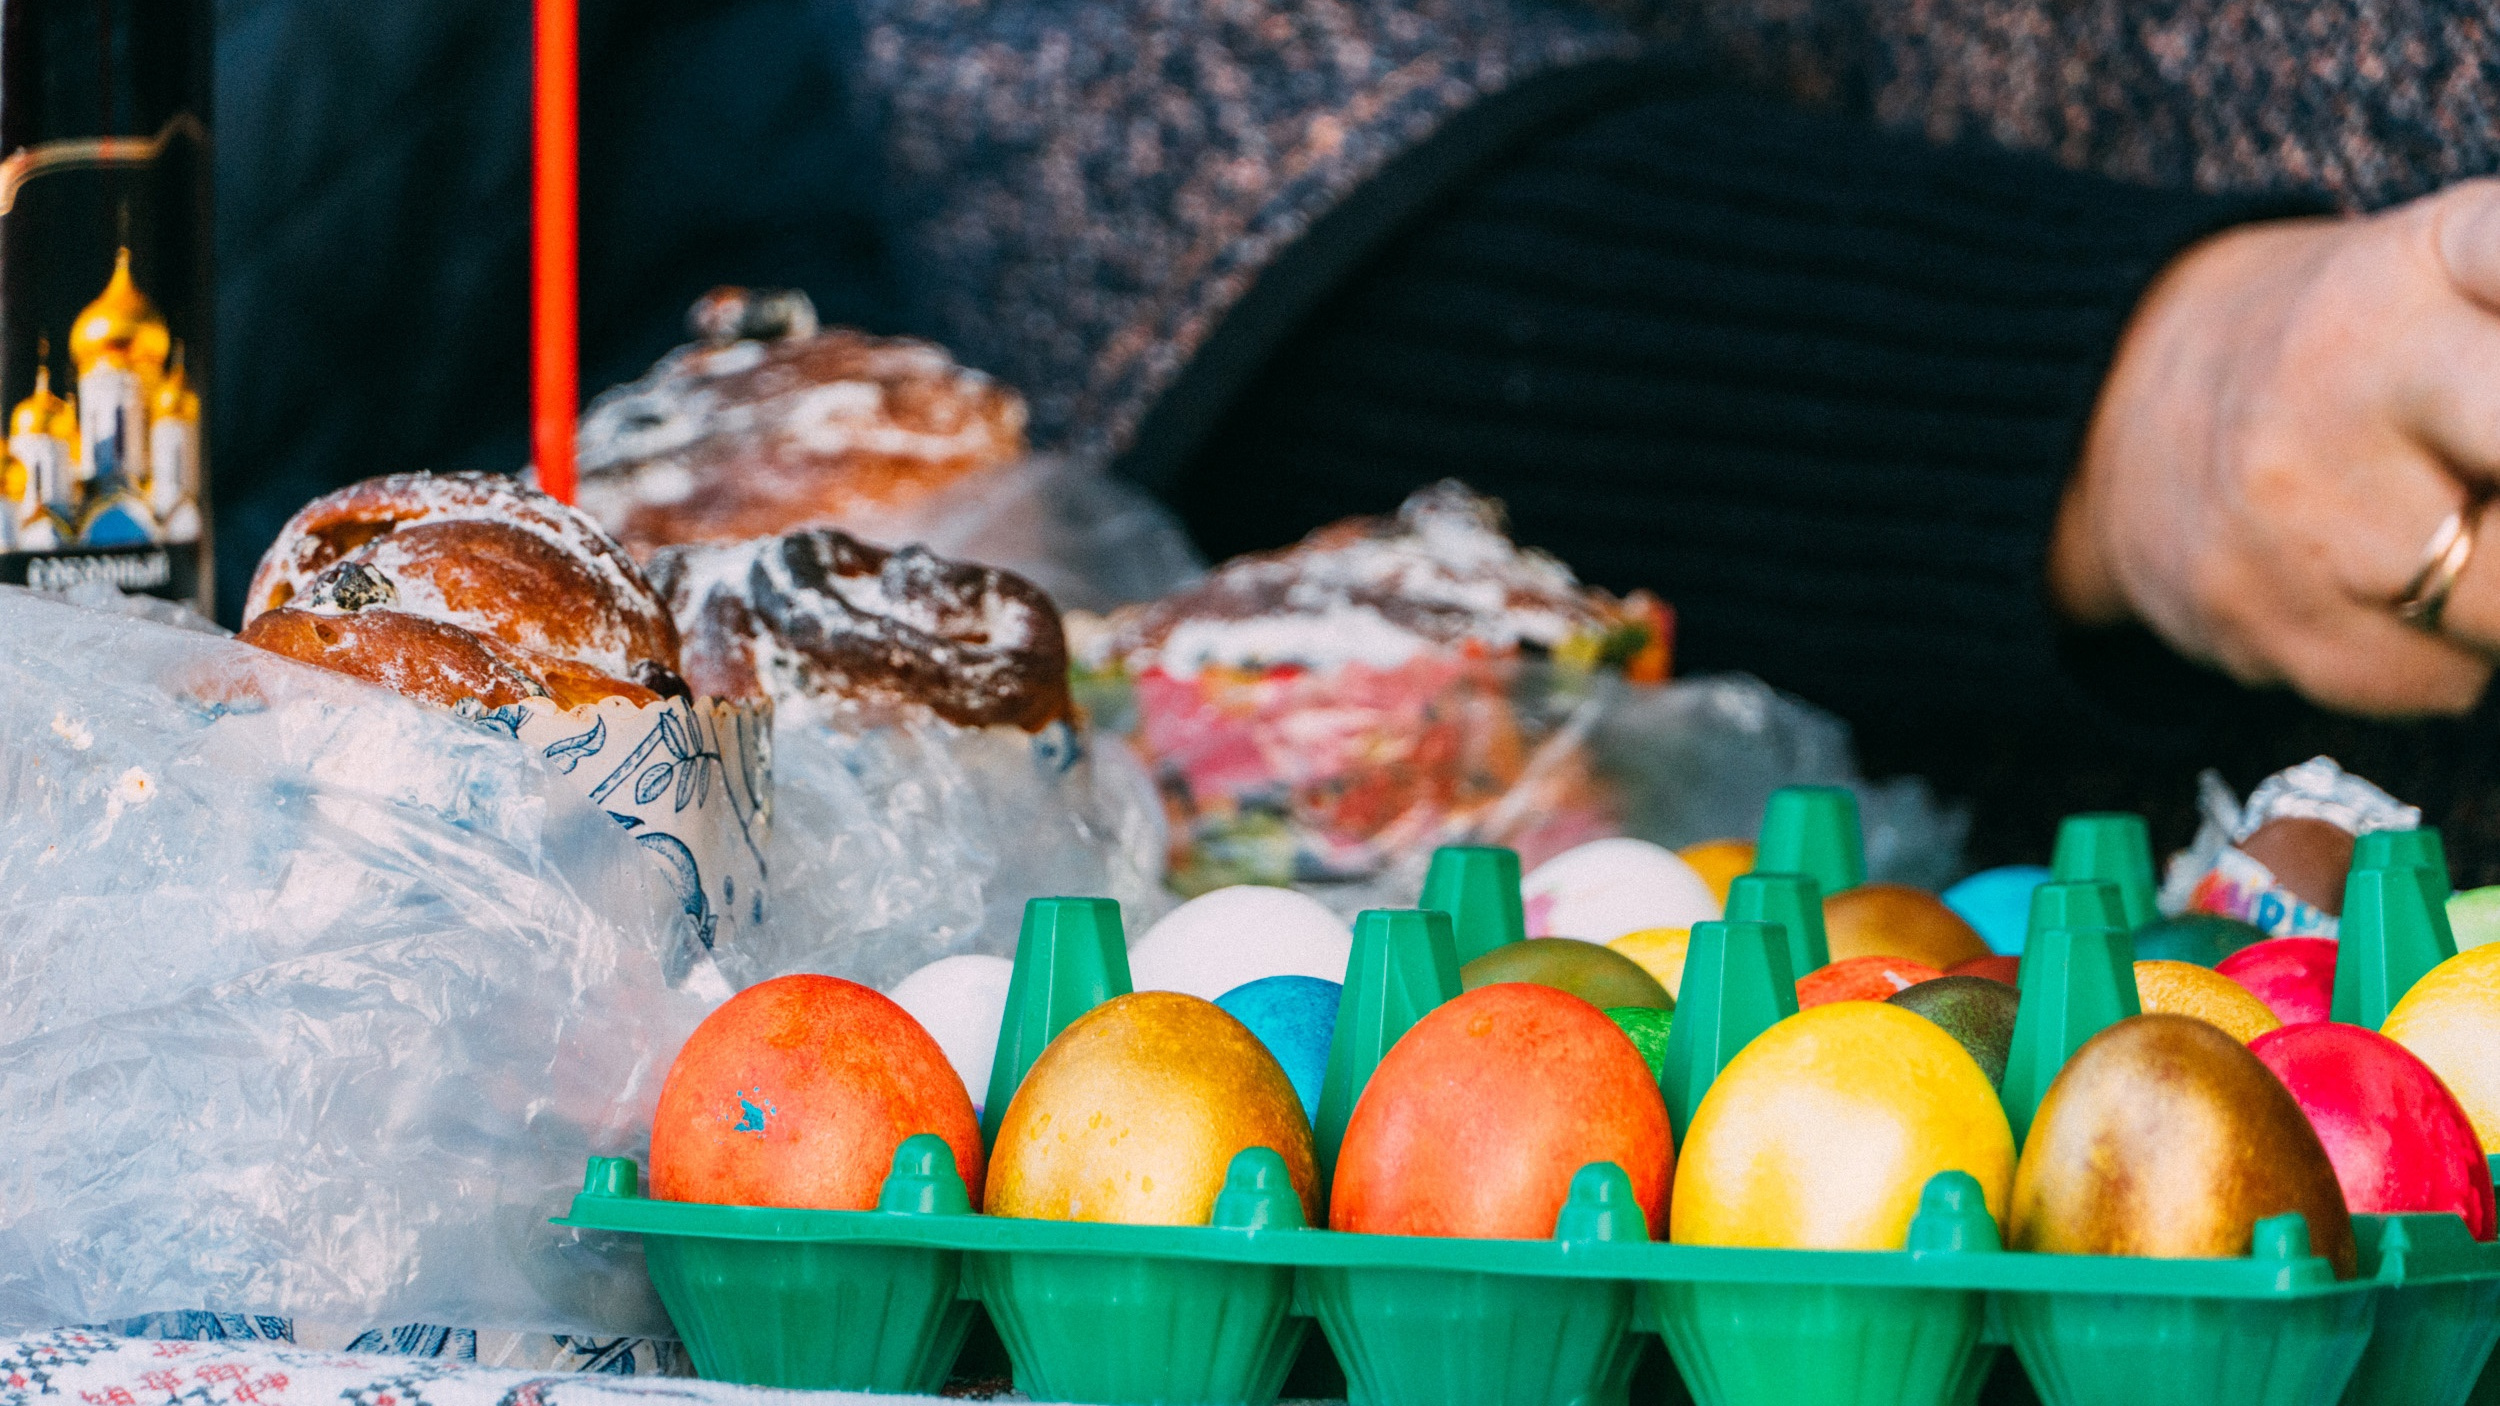 Стали дорожать накануне праздника: сколько стоят яйца перед Пасхой на рынке и в магазинах Ярославля